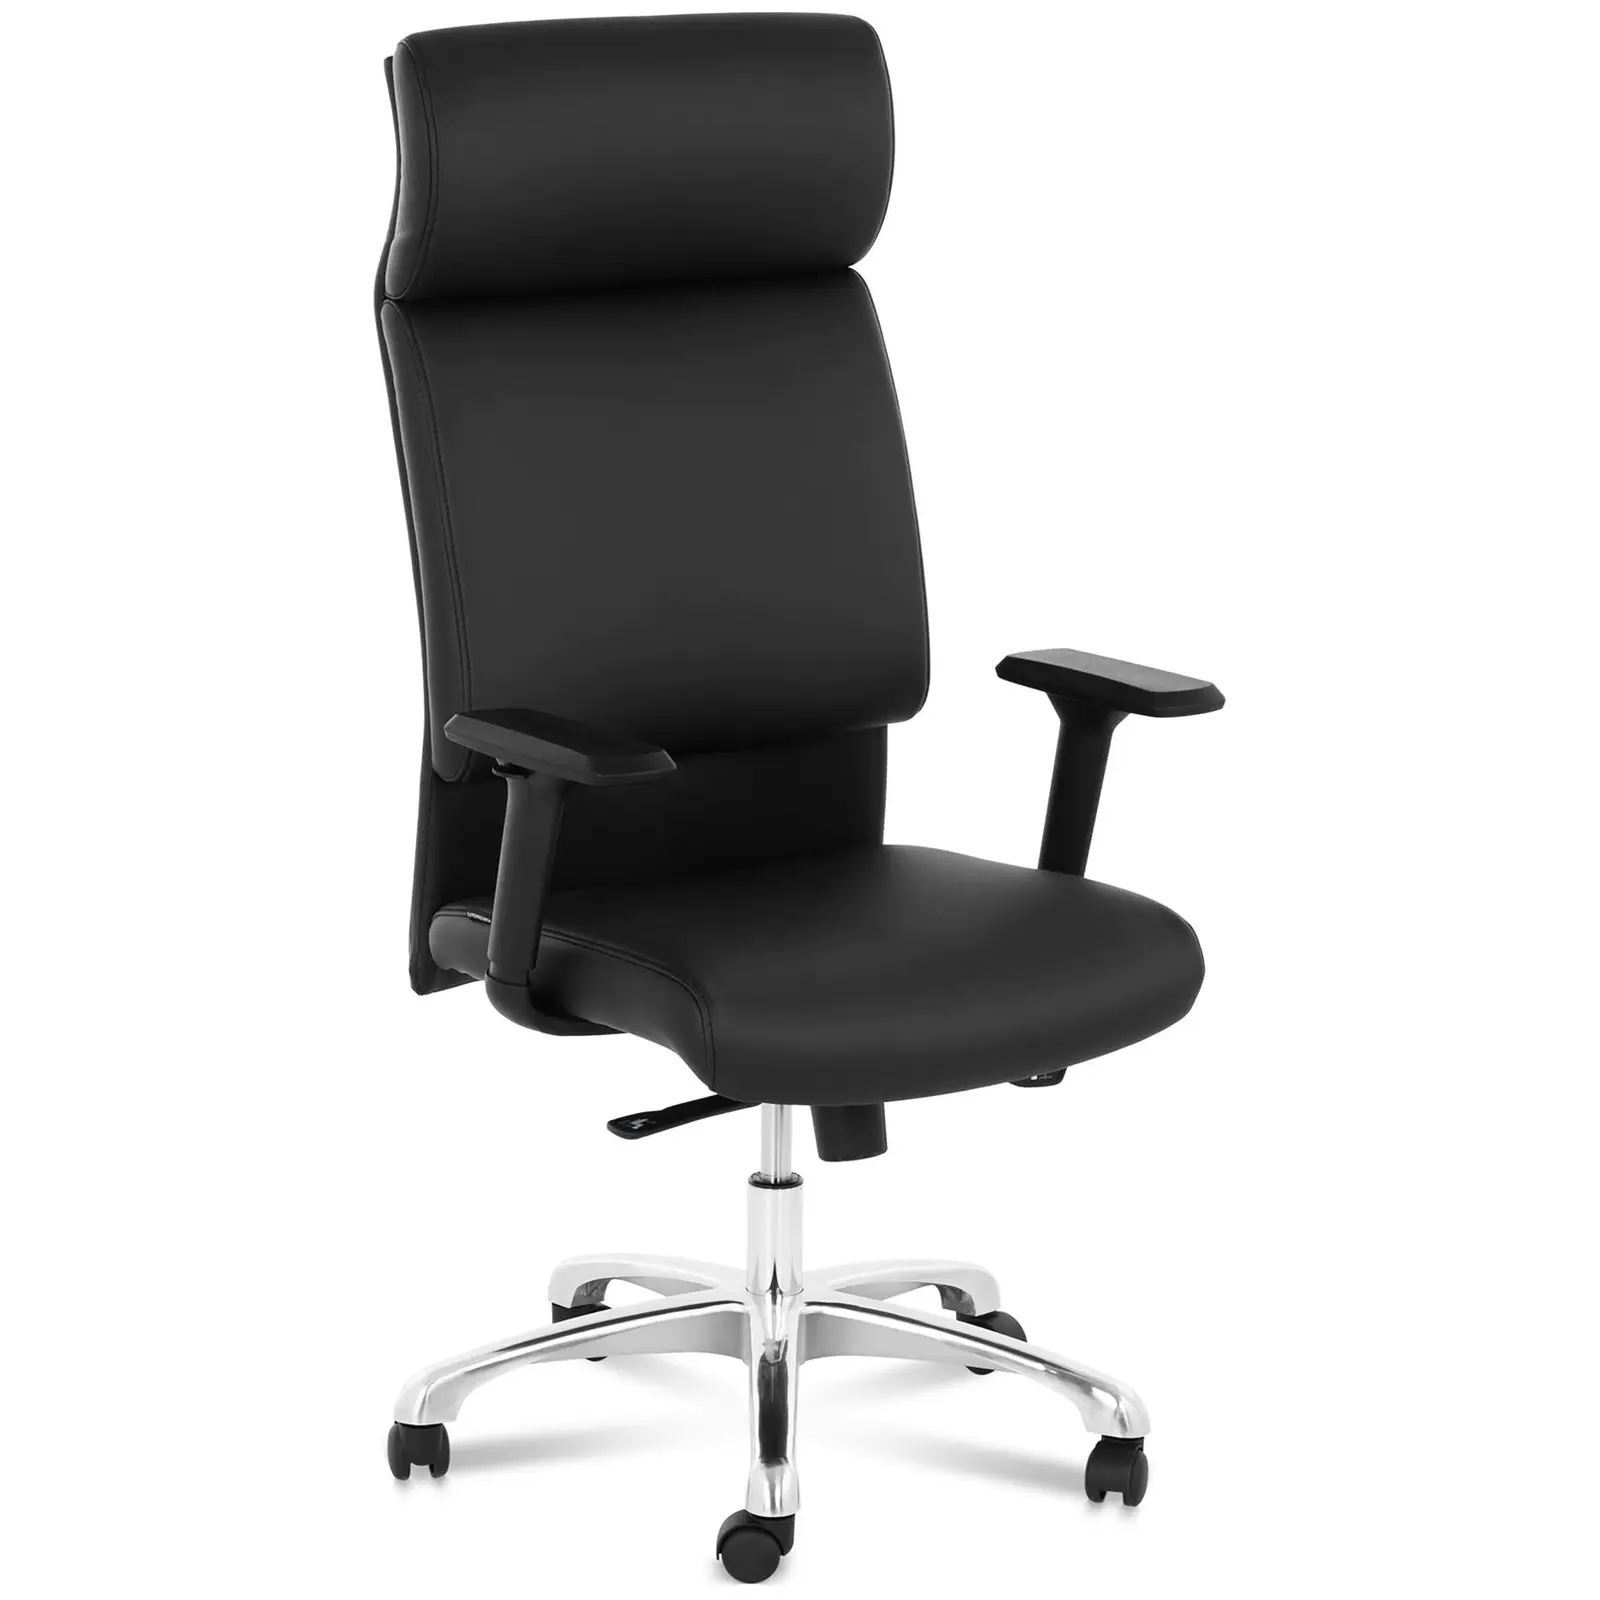 Office Chair - executive chair - imitation leather - chrome - headrest - 150 kg